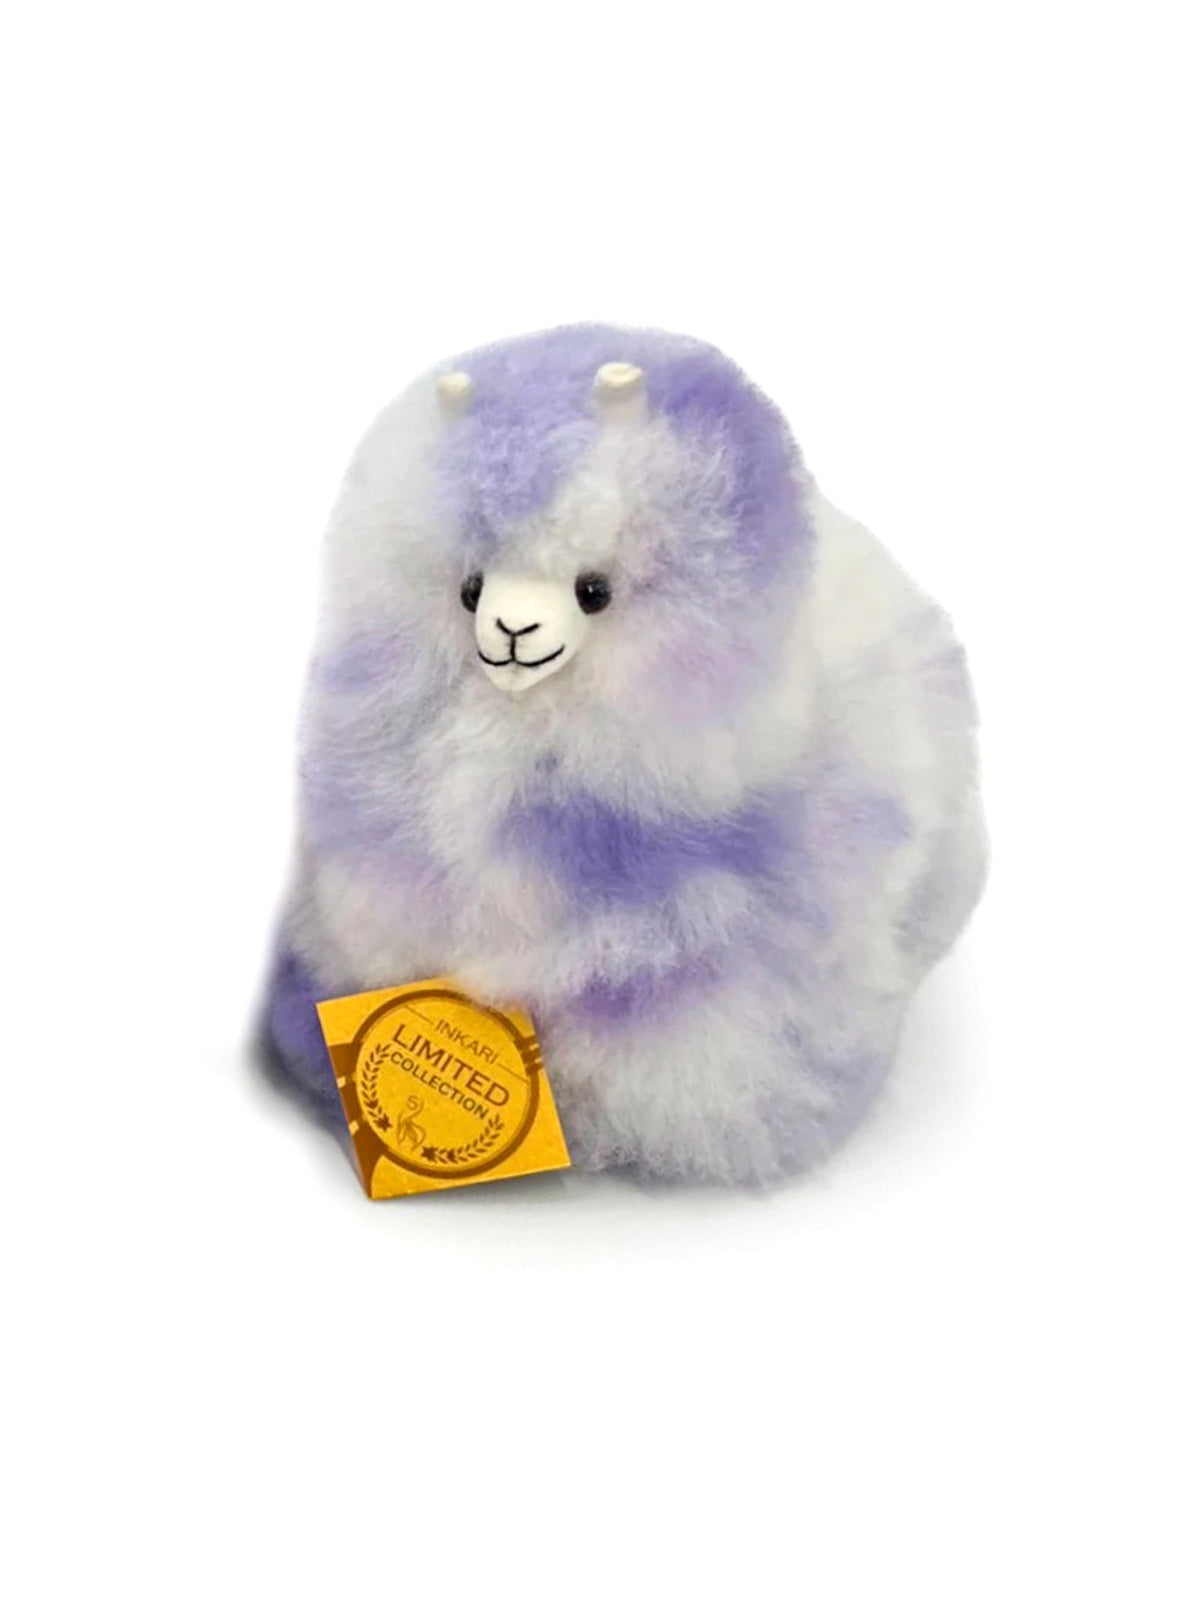 Inkari Alpaca soft toy - Lavender-Mini 15cm